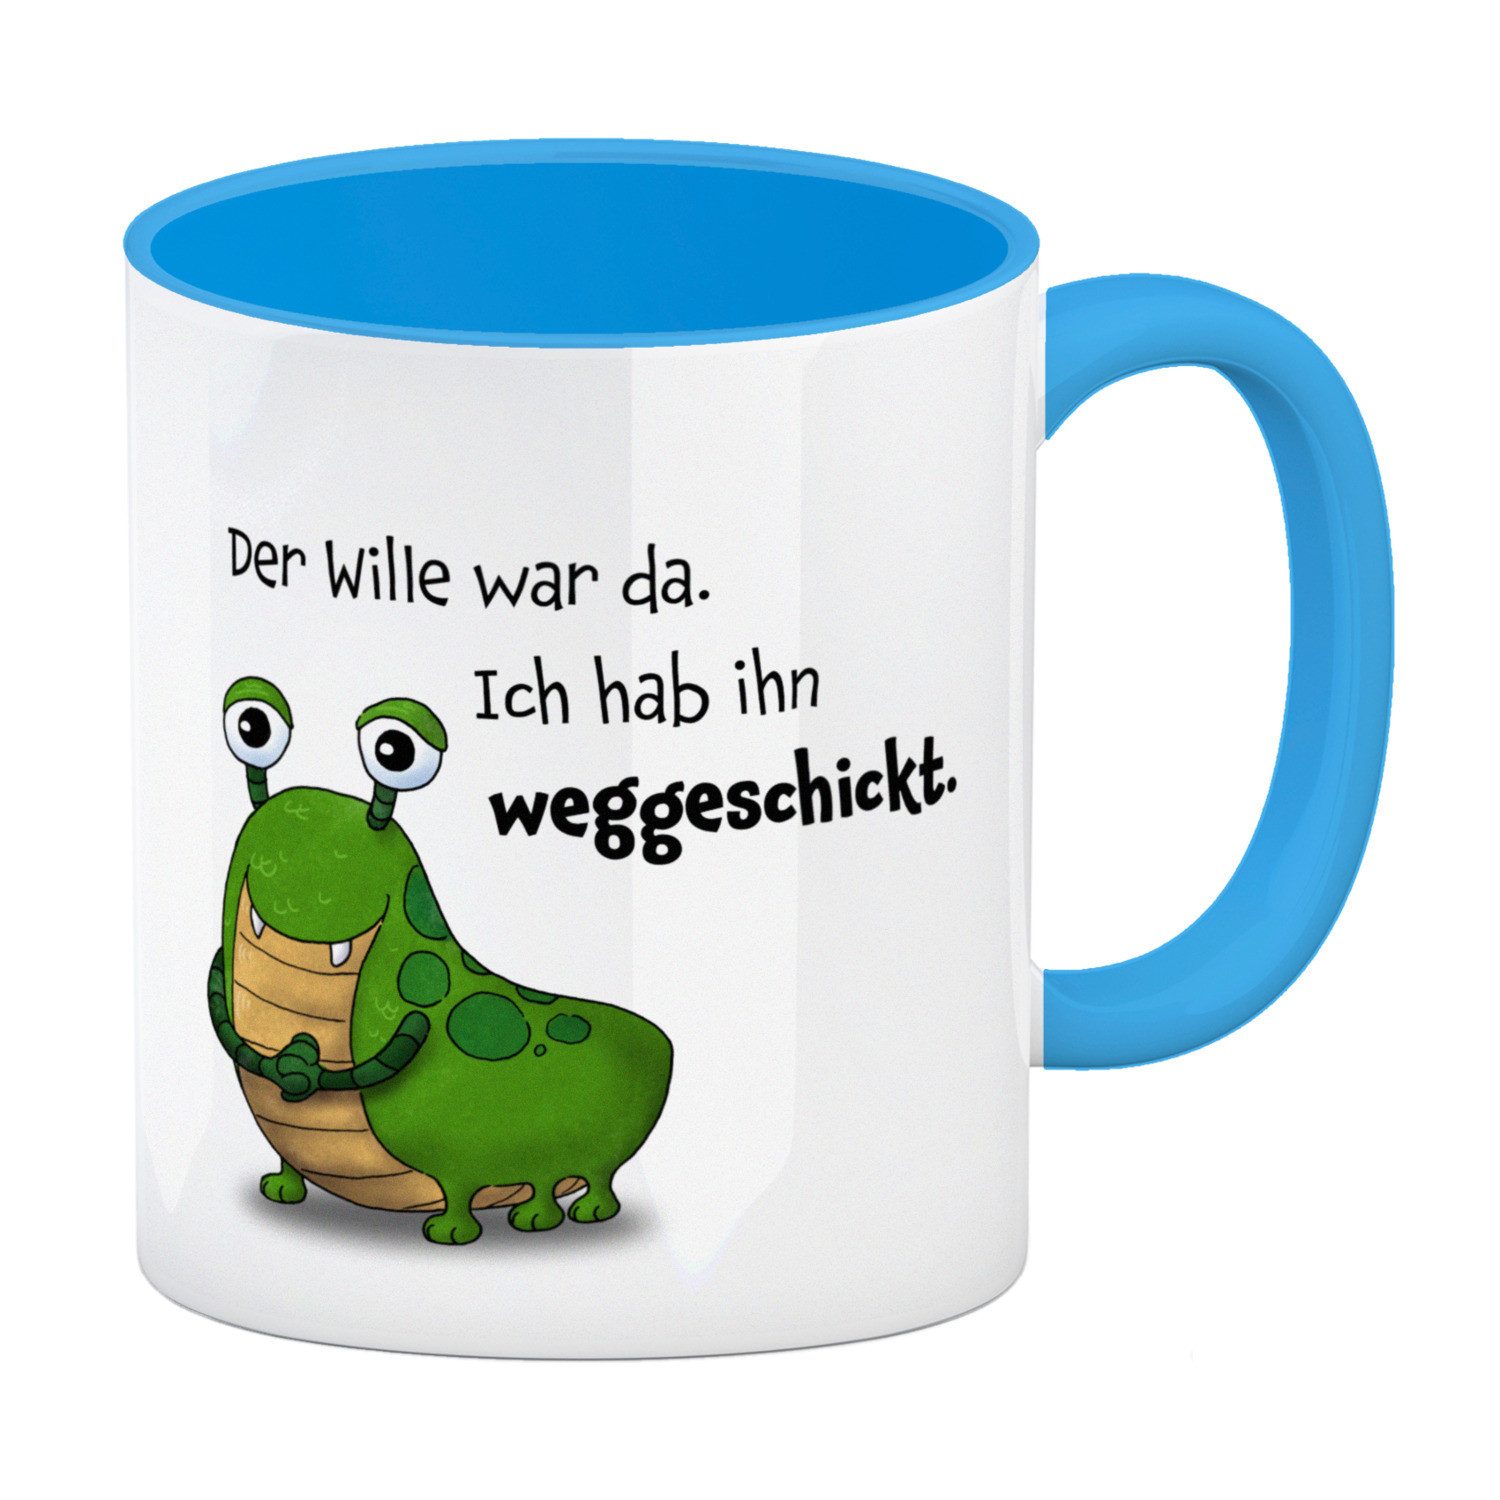 speecheese Tasse Freches Monster in grün Kaffeebecher in hellblau mit lustigem Spruch